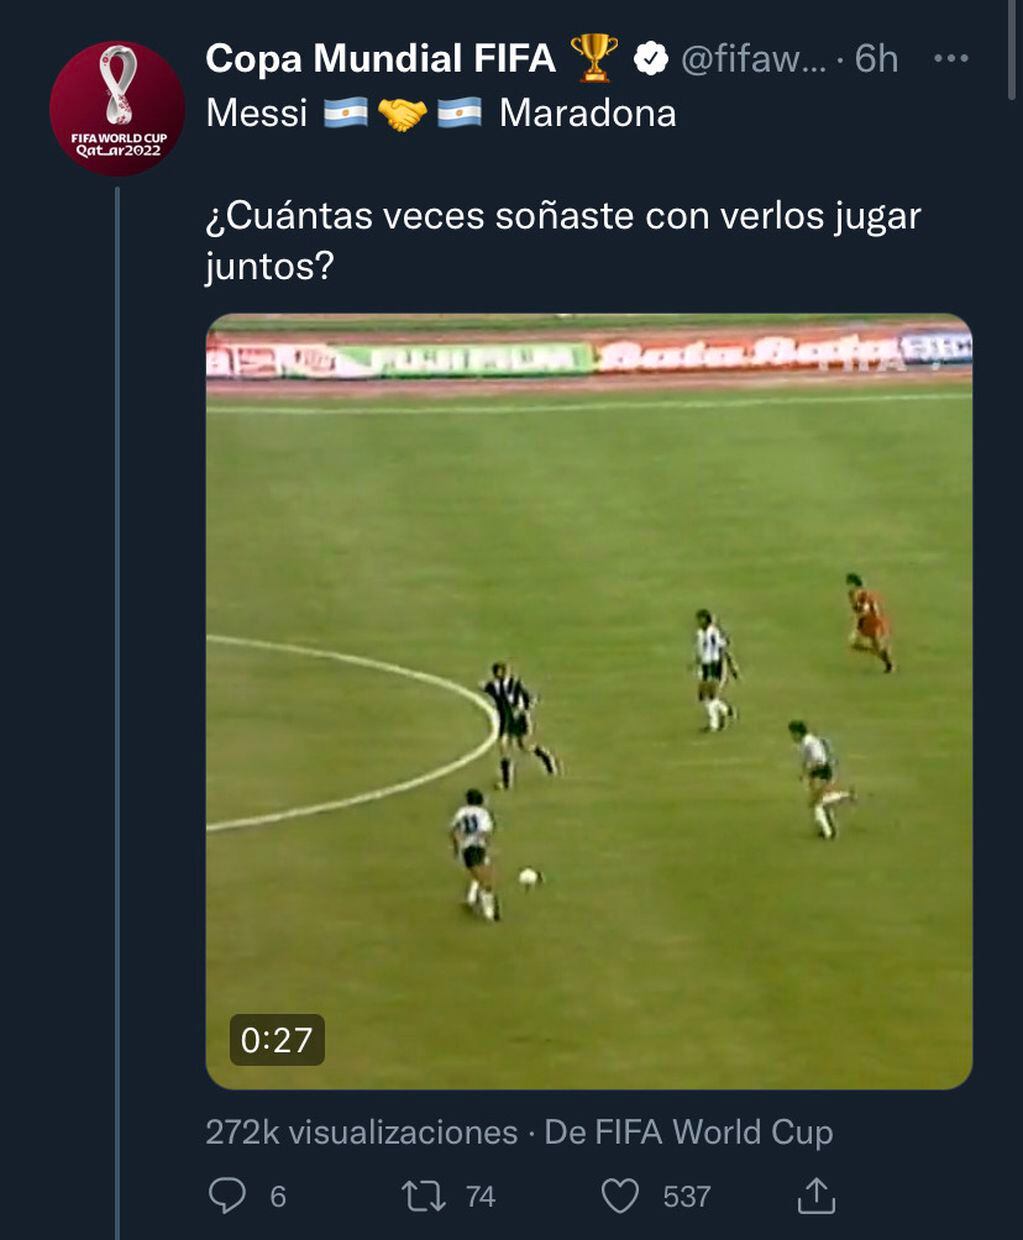 El tweet de la cuenta oficial de la Copa del Mundo de la FIFA sobre Maradona y Messi.